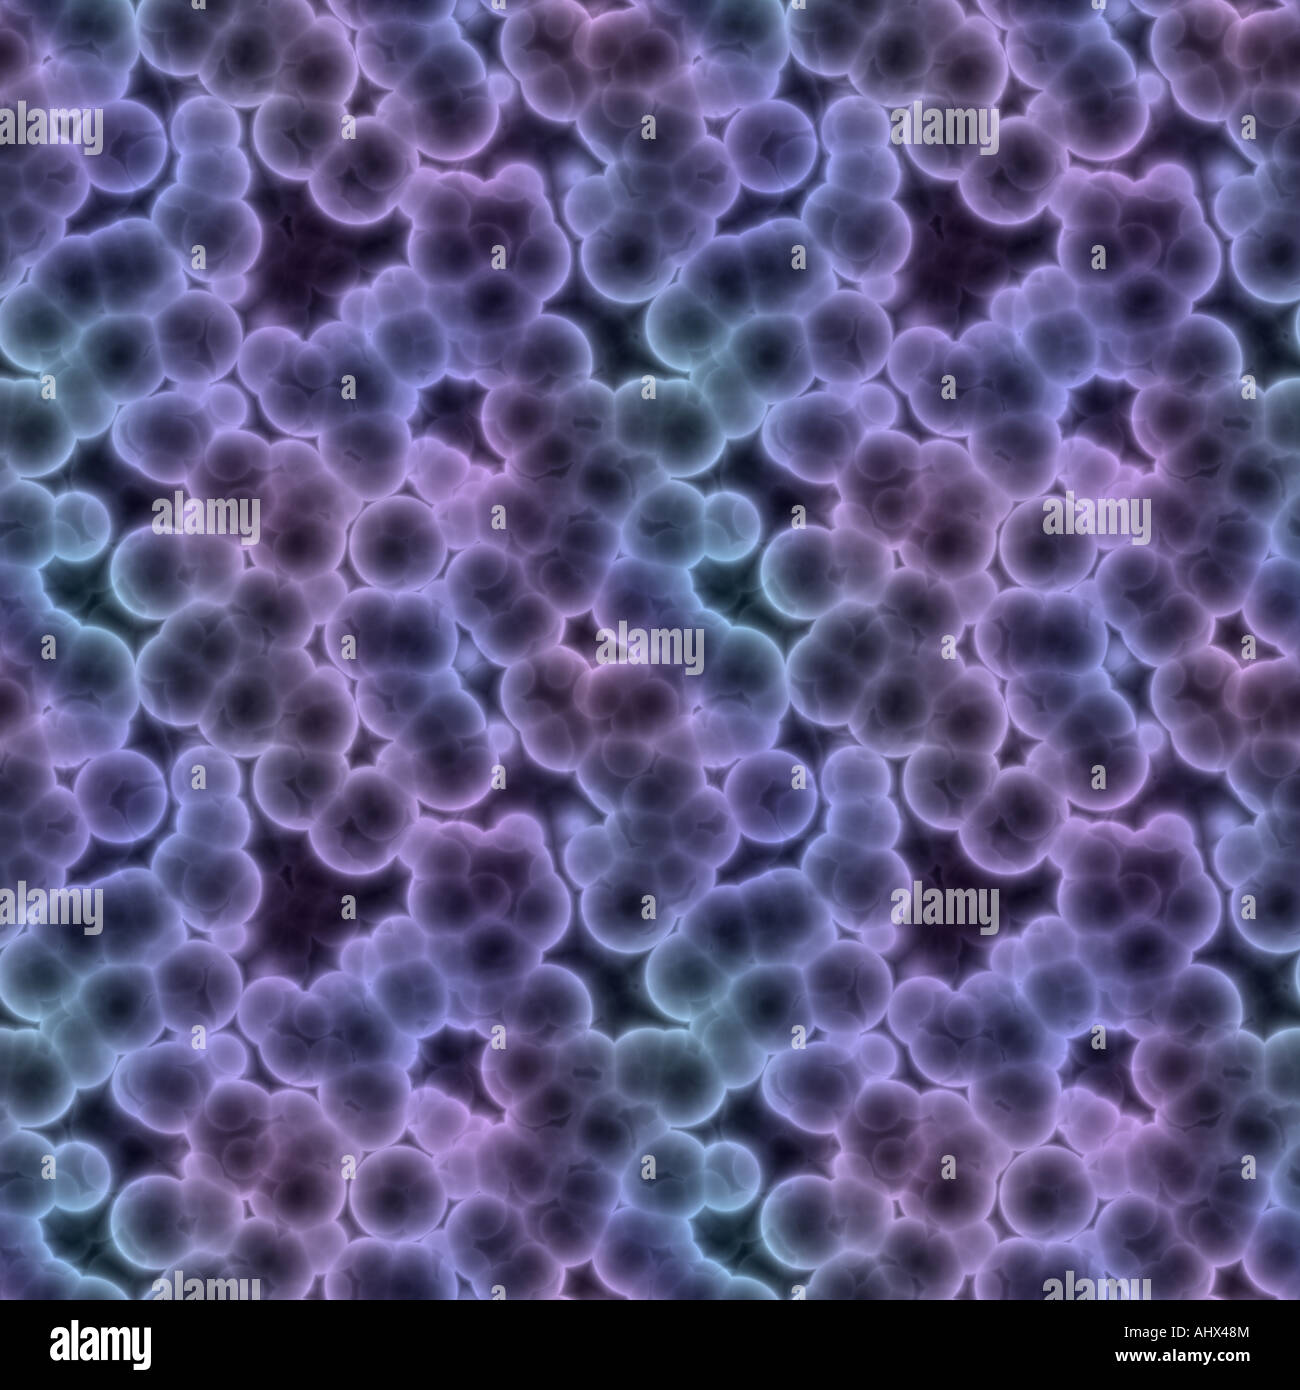 Une grande image reconstruite de bactéries ou de cellules sous un microscope Banque D'Images